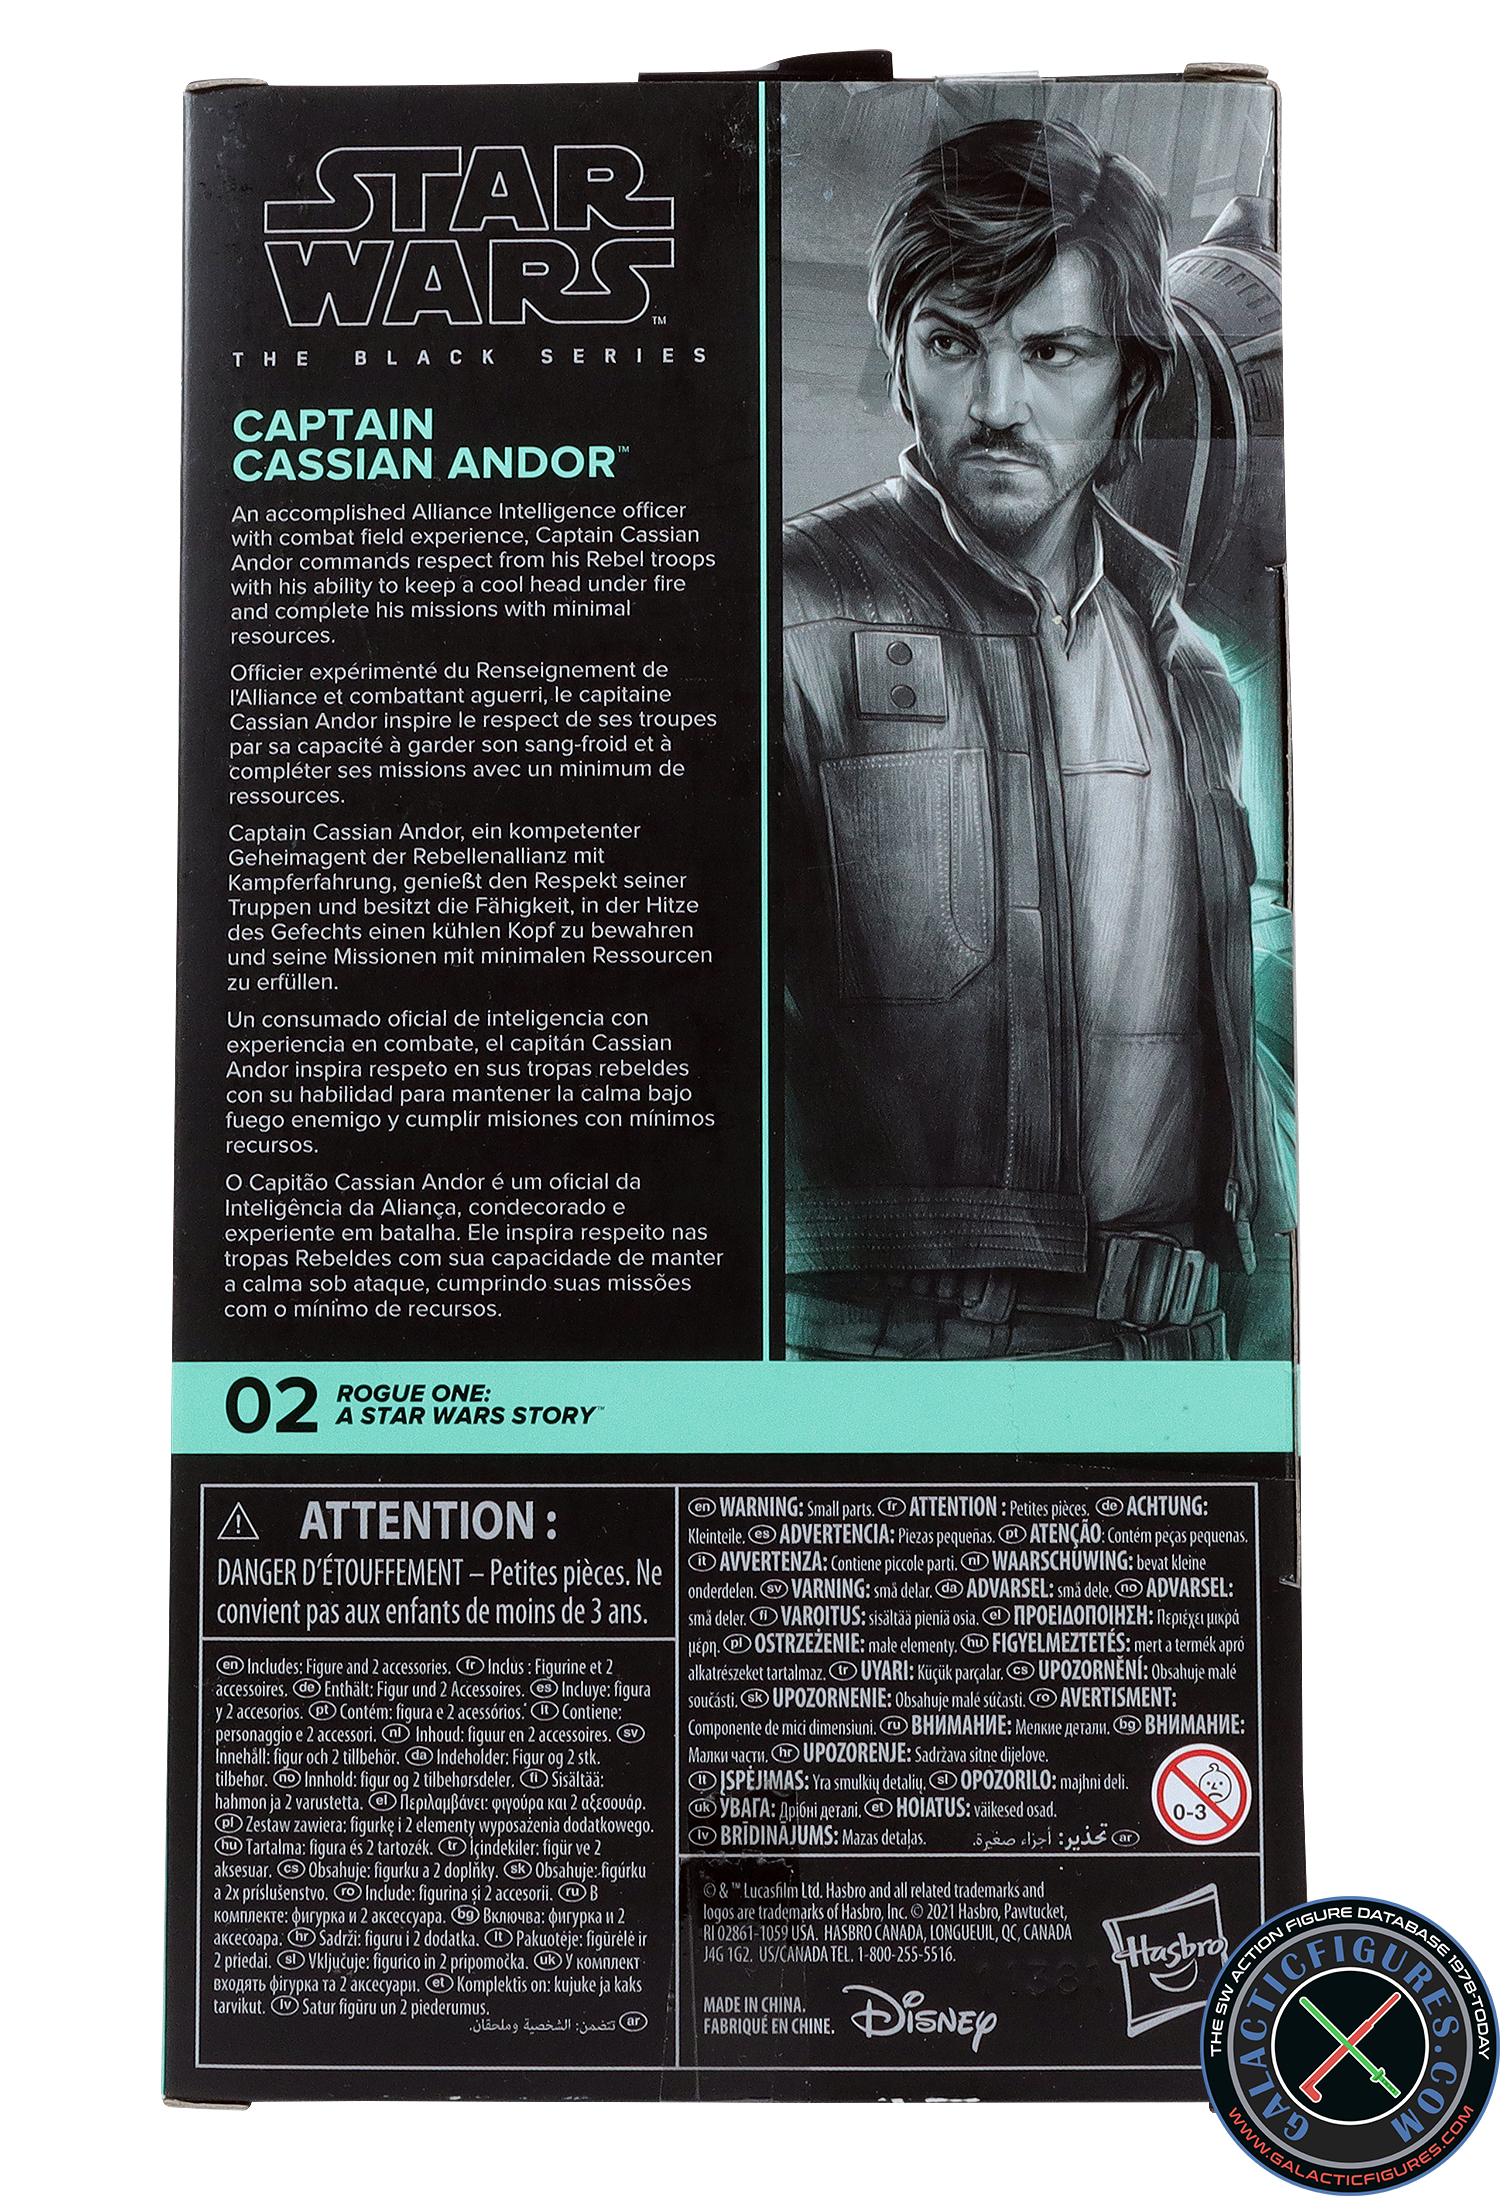 Cassian Andor